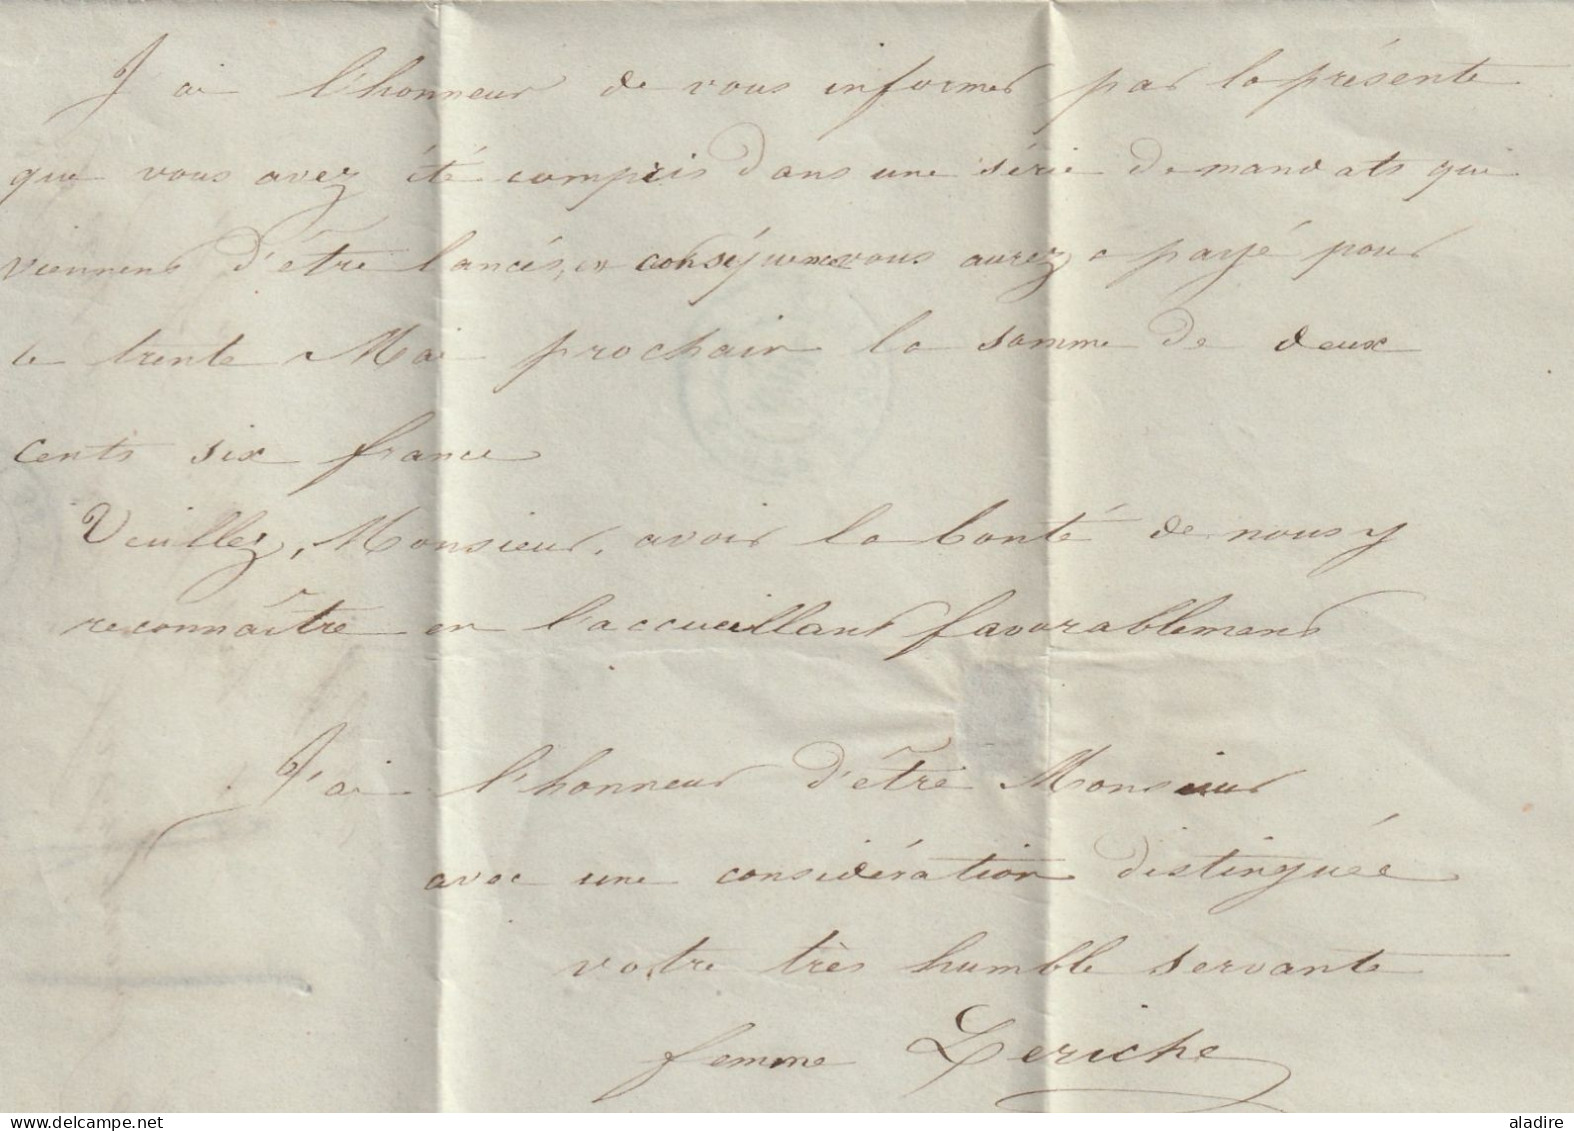 1847 - lettre pliée avec correspondance de Sens sur Yonne vers Paris - route de Genève - taxe 4